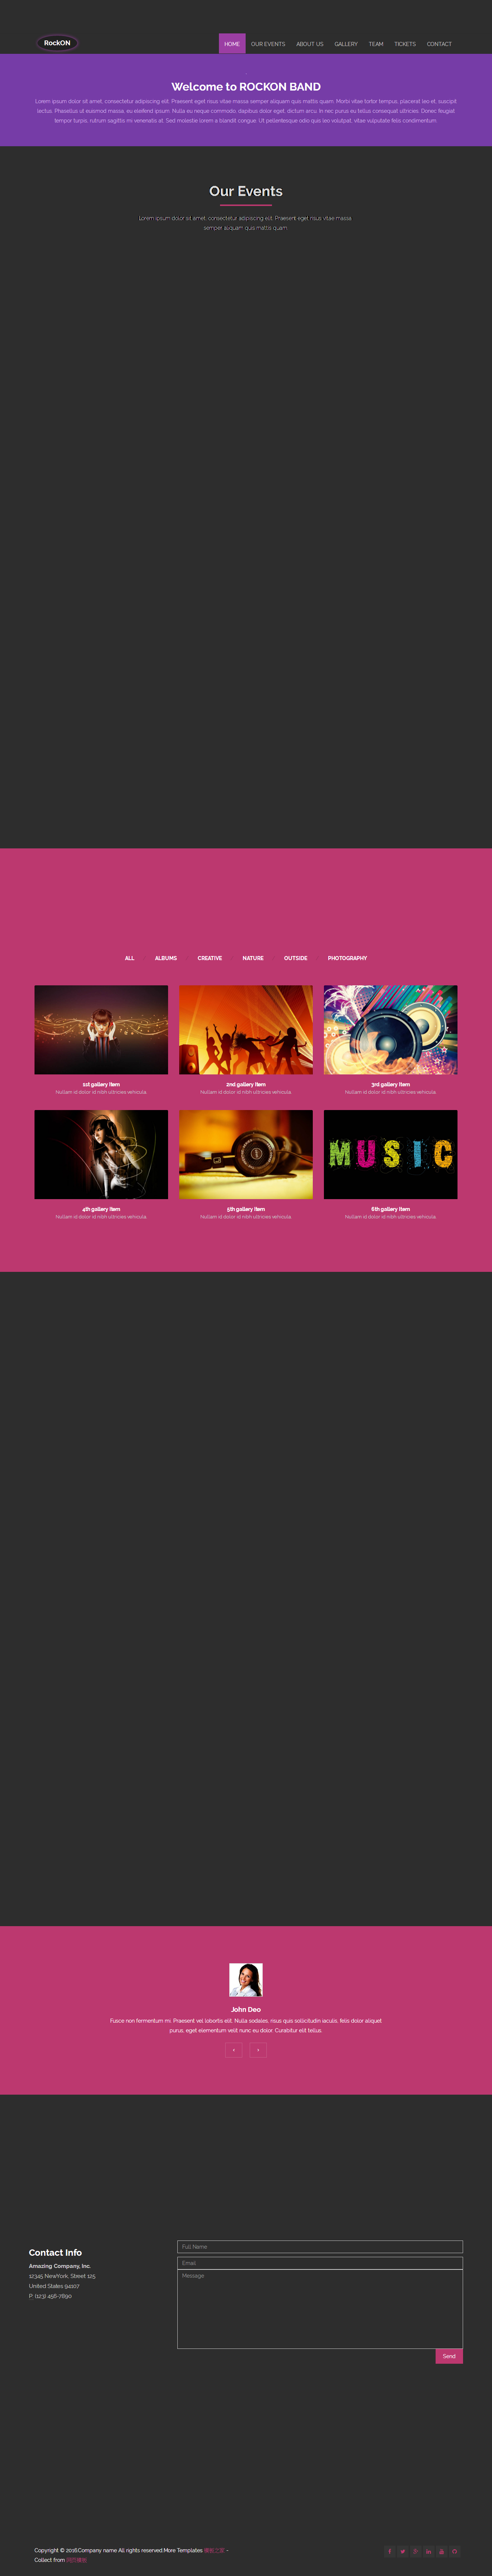 精美大气的演唱会活动策划企业网站模板下载